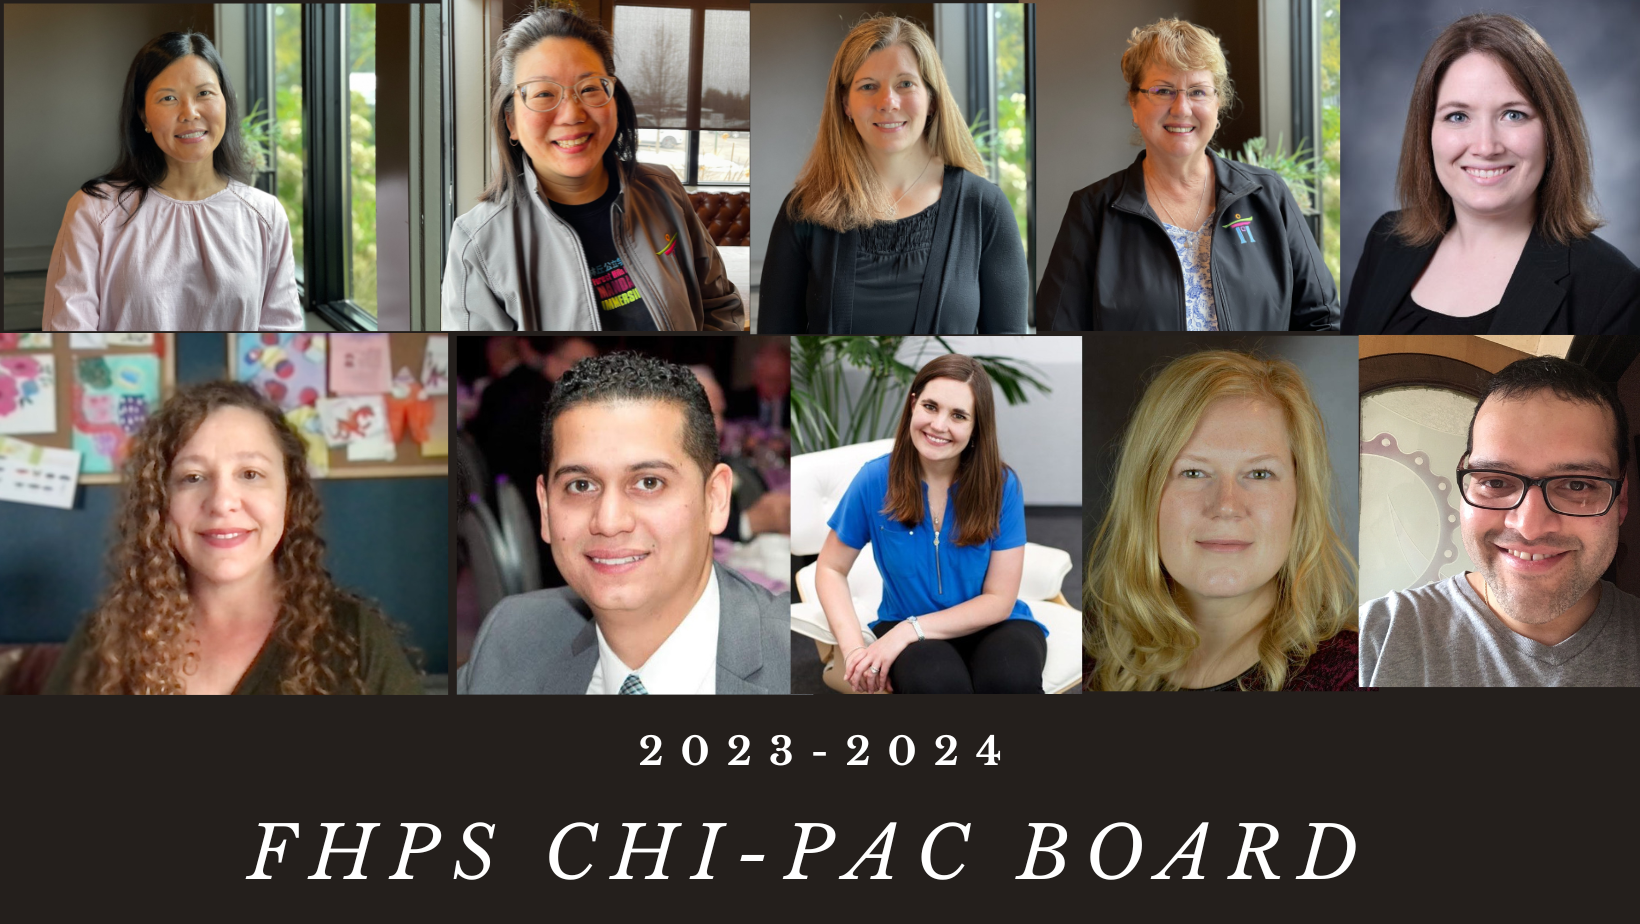 FHPS chipac board 2023